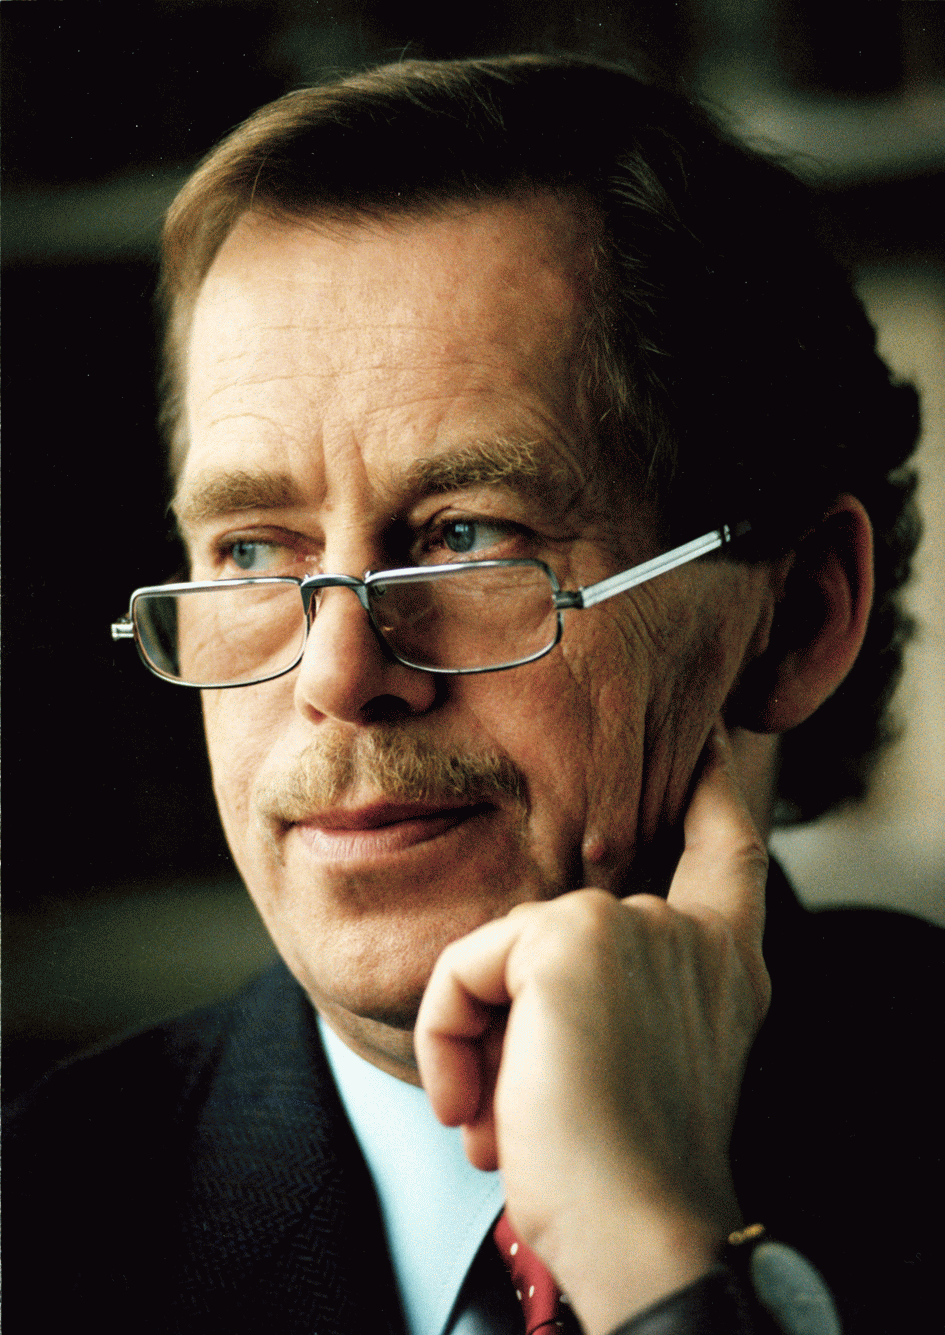 Le 18 Décembre 2011 dernier disparaissait Vaclav Havel